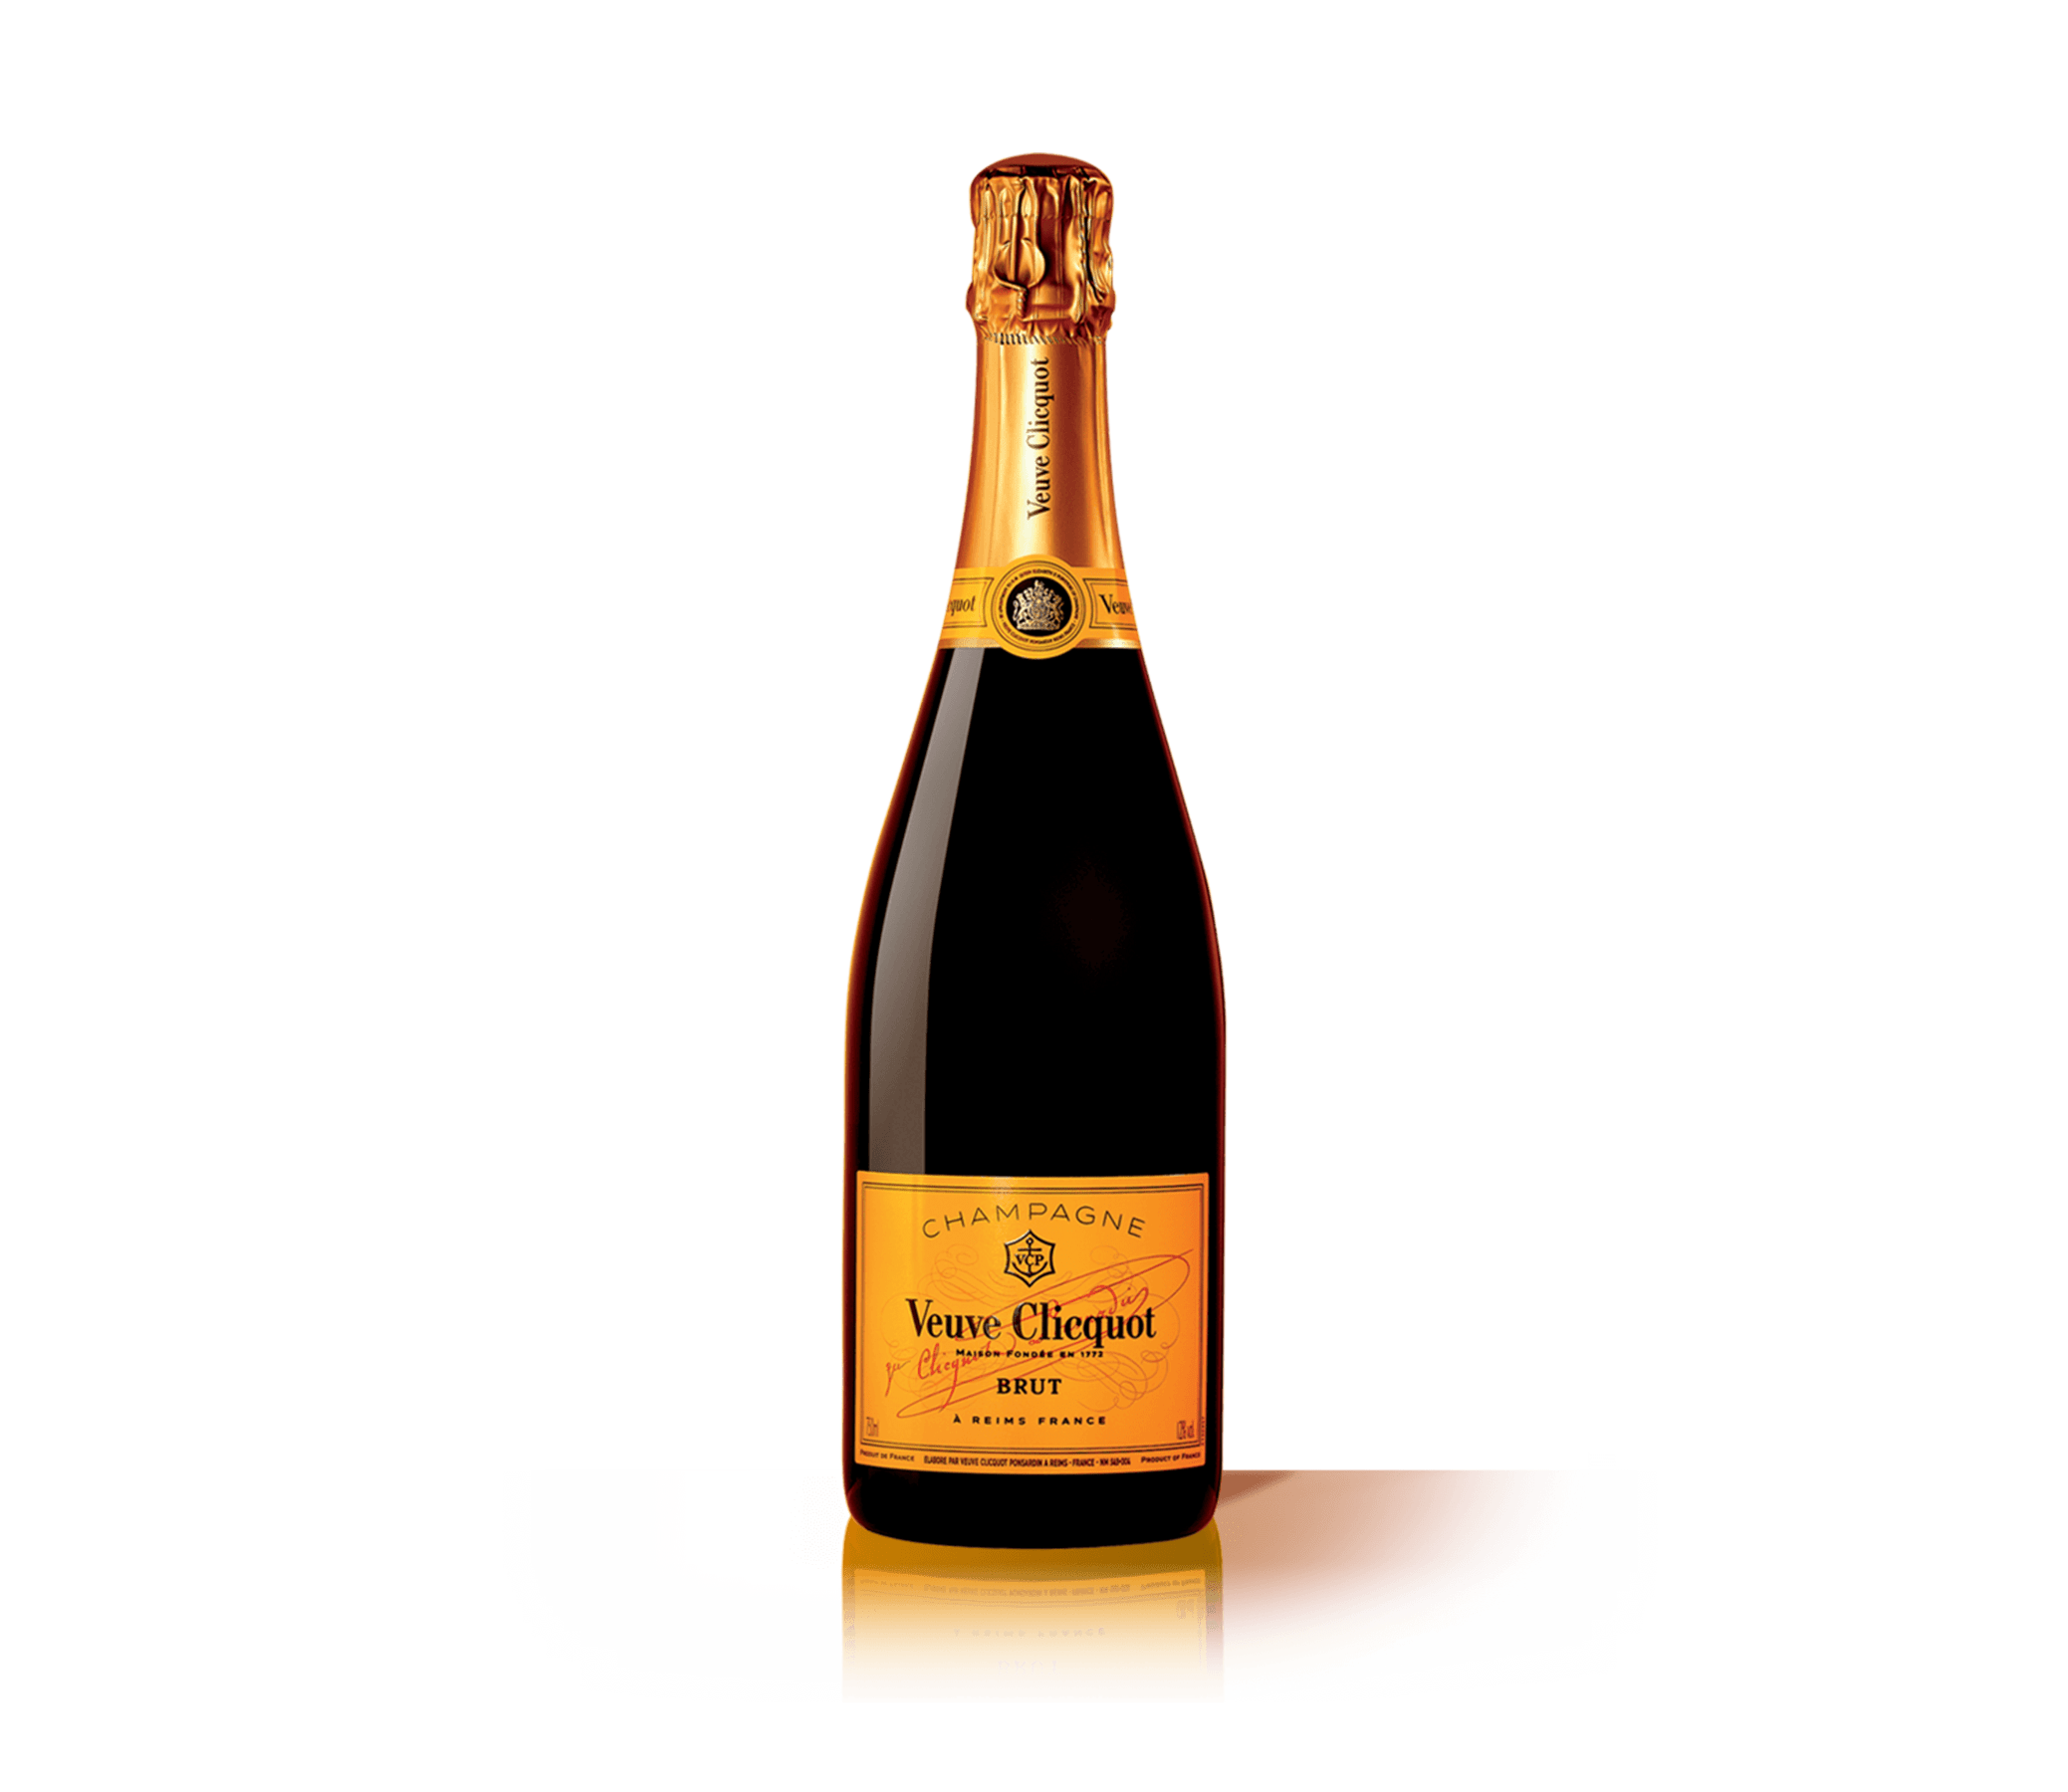 Шампанское Veuve Clicquot Rose 2008 0.75 л. Игристое вино французское AOP Champagne Veuve Clicquot Brut 0.75 l. Veuve Clicquot Brut 0.75 л. Шампанское "Veuve Clicquot Ponsardin" (вдова Клико Понсардин).